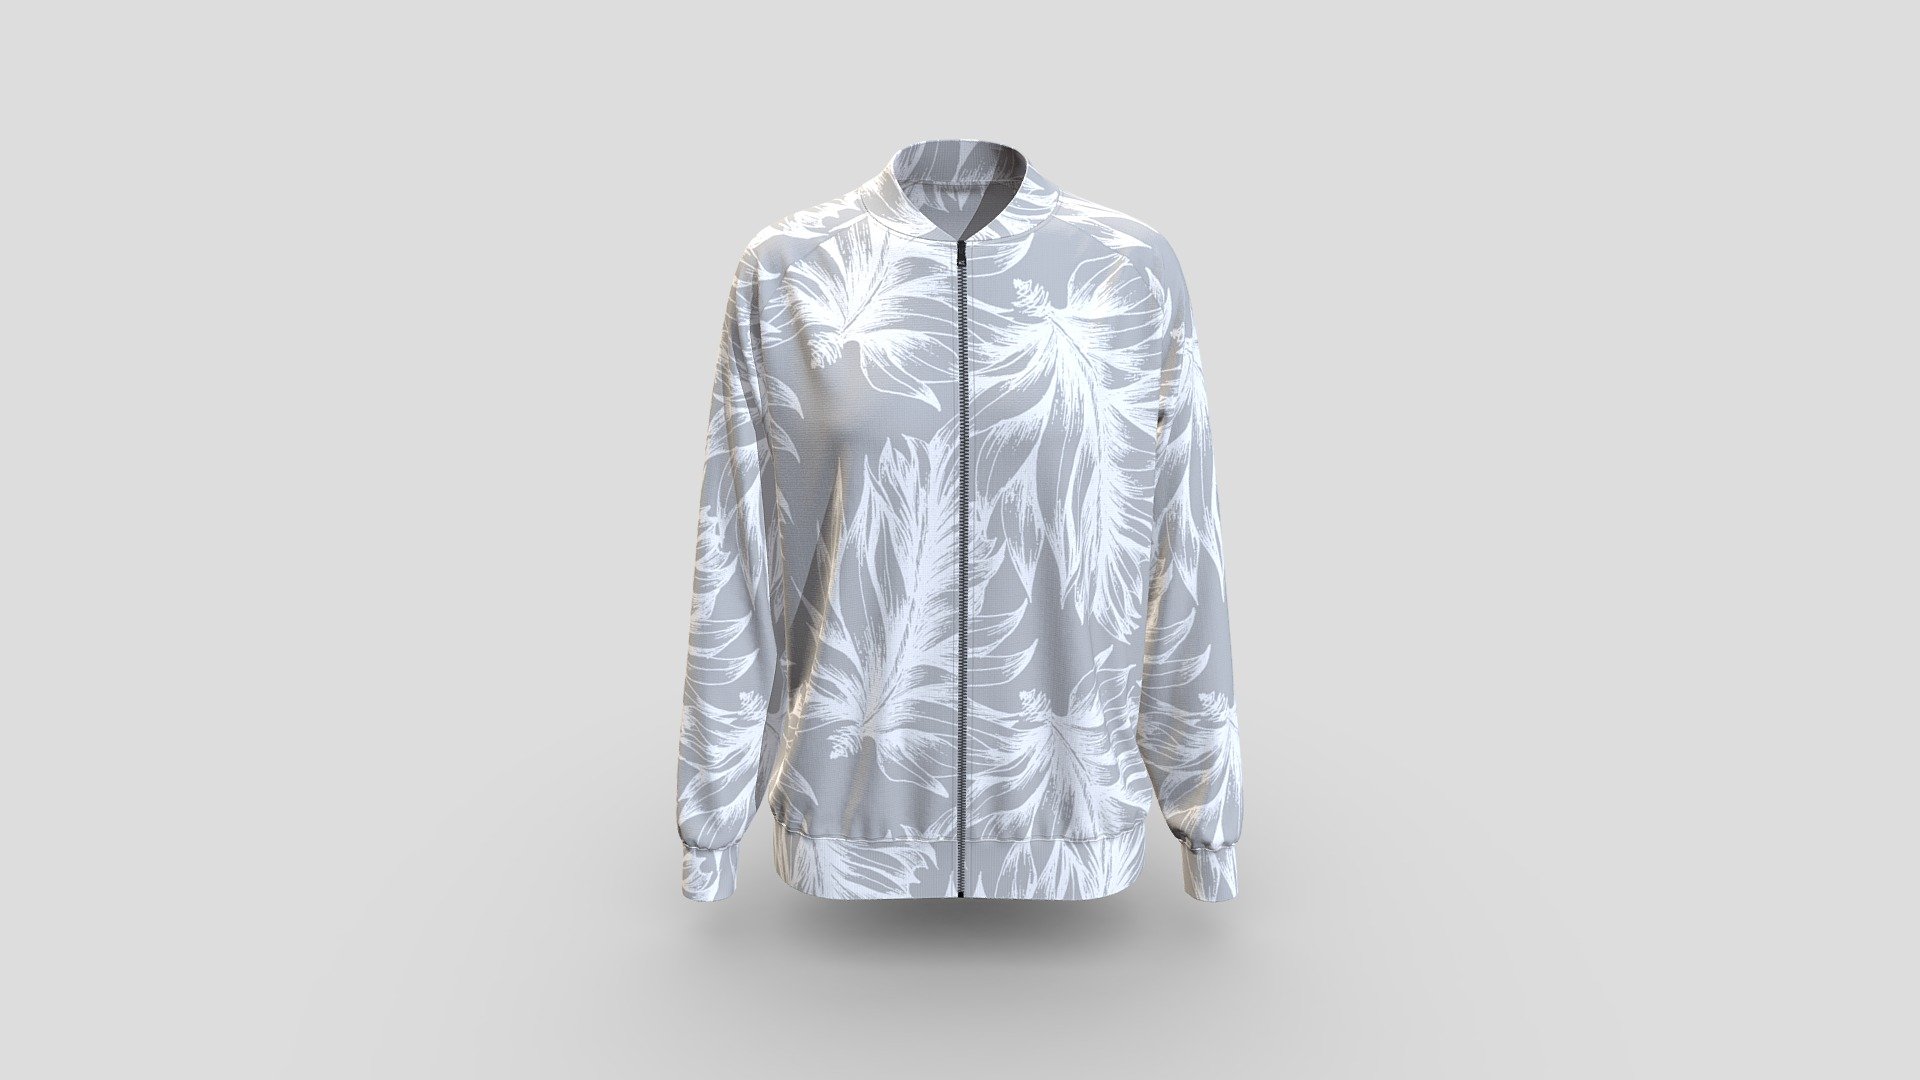 Super Stylish Jacket Blouse Design Patterns | jacket blouse designs images  | Latest Designer Blouses - YouTube